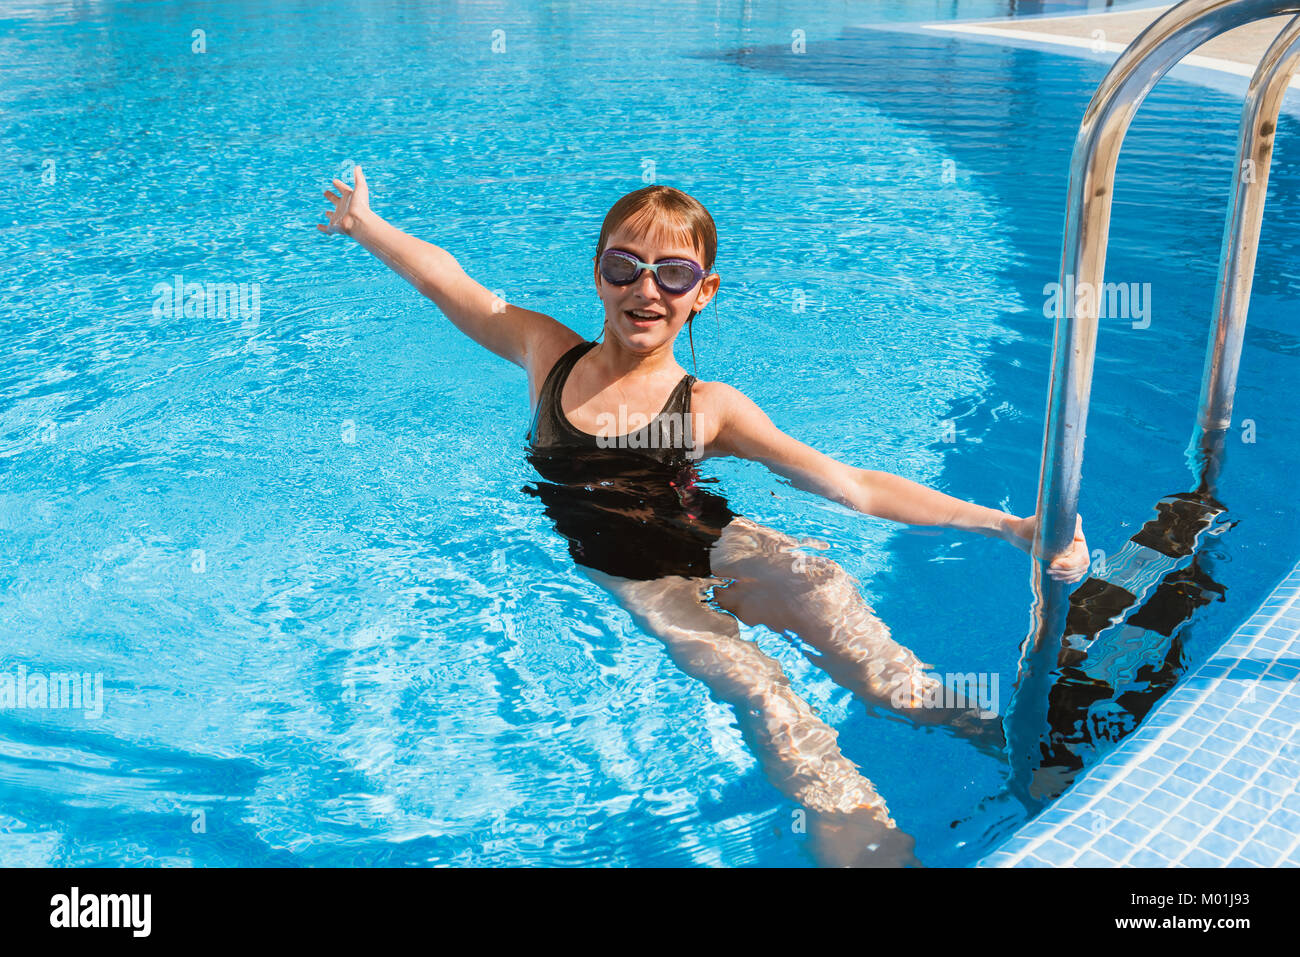 Cute teen girl in swimming pool Stock Photo